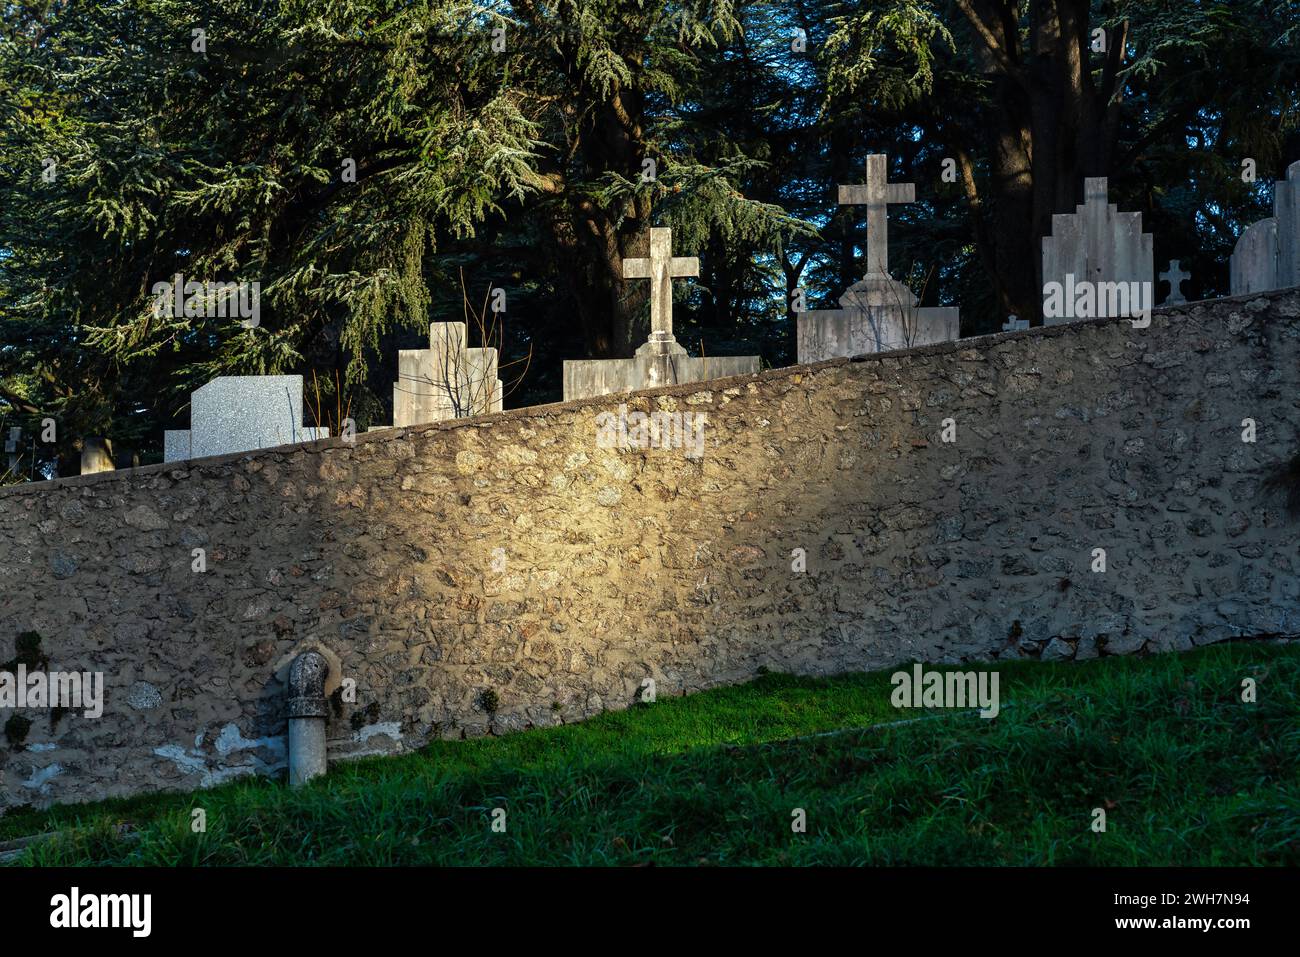 Der Friedhof Firminy, die Grabsteine und Kreuze der Gräber, die von einem Sonnenstrahl beleuchtet werden, tauchen aus der umliegenden Mauer auf. Firminy, Frankreich Stockfoto